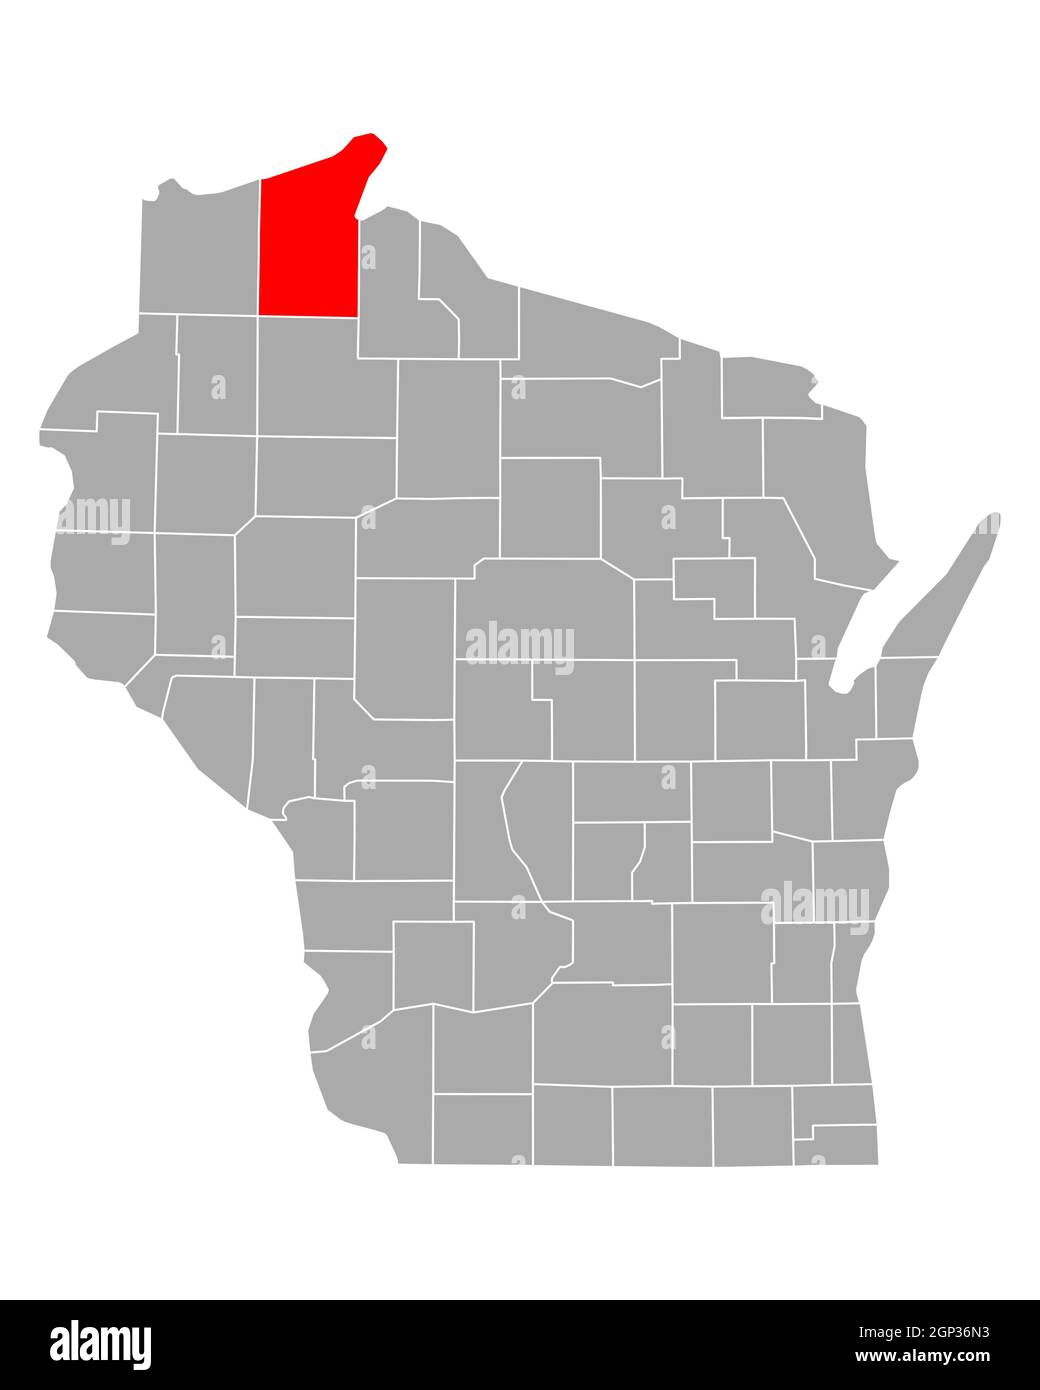 Bayfield sulla mappa di Wisconsin Foto Stock